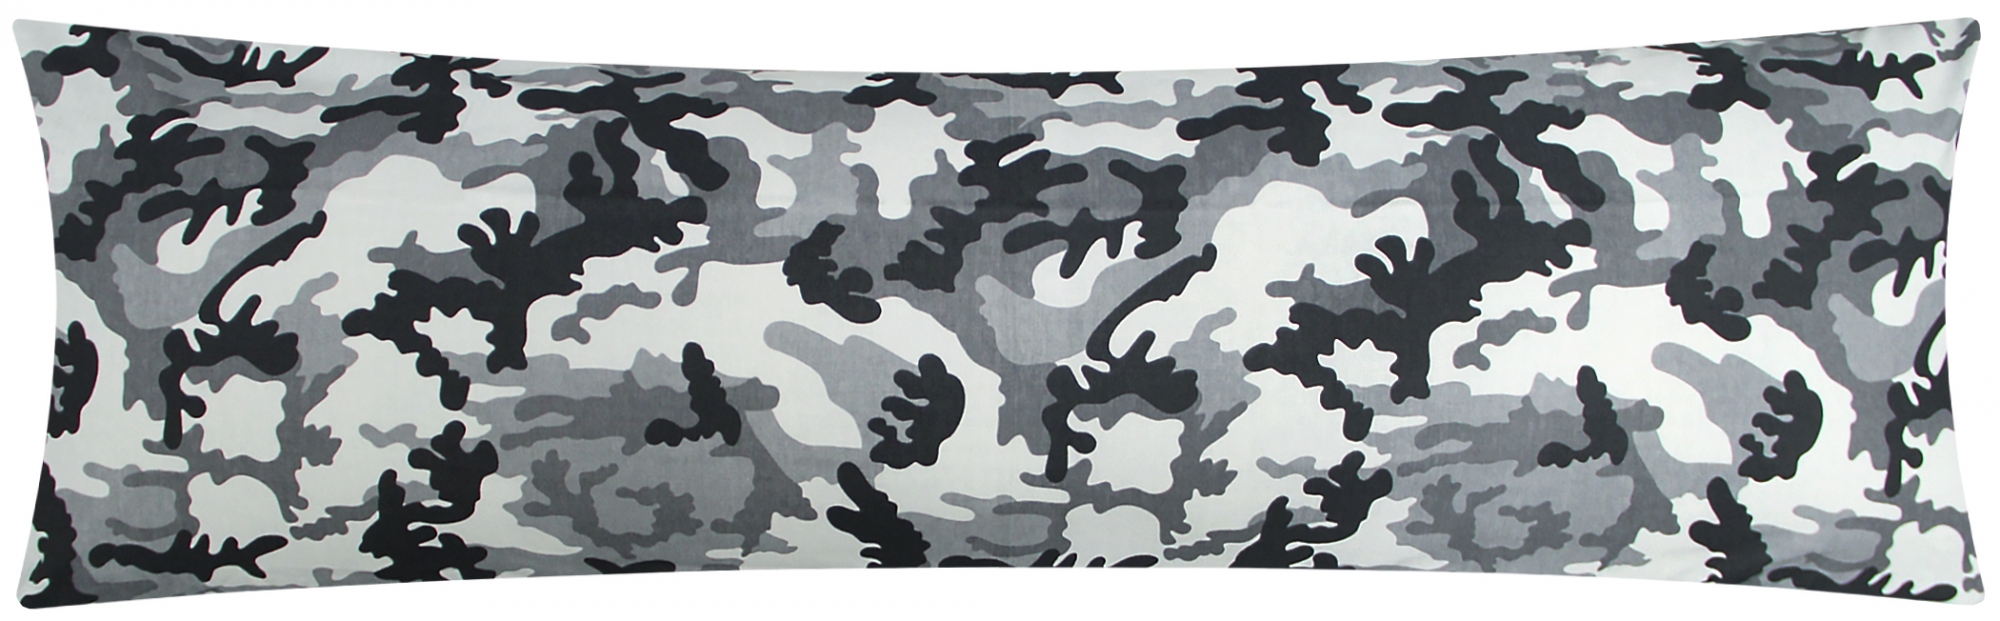 Baumwoll Renforcé Seitenschläferkissen Bezug 40x145cm - Camouflage in Grau und Schwarz - 100% Baumwolle Stillkissenbezug (KY-200-3)